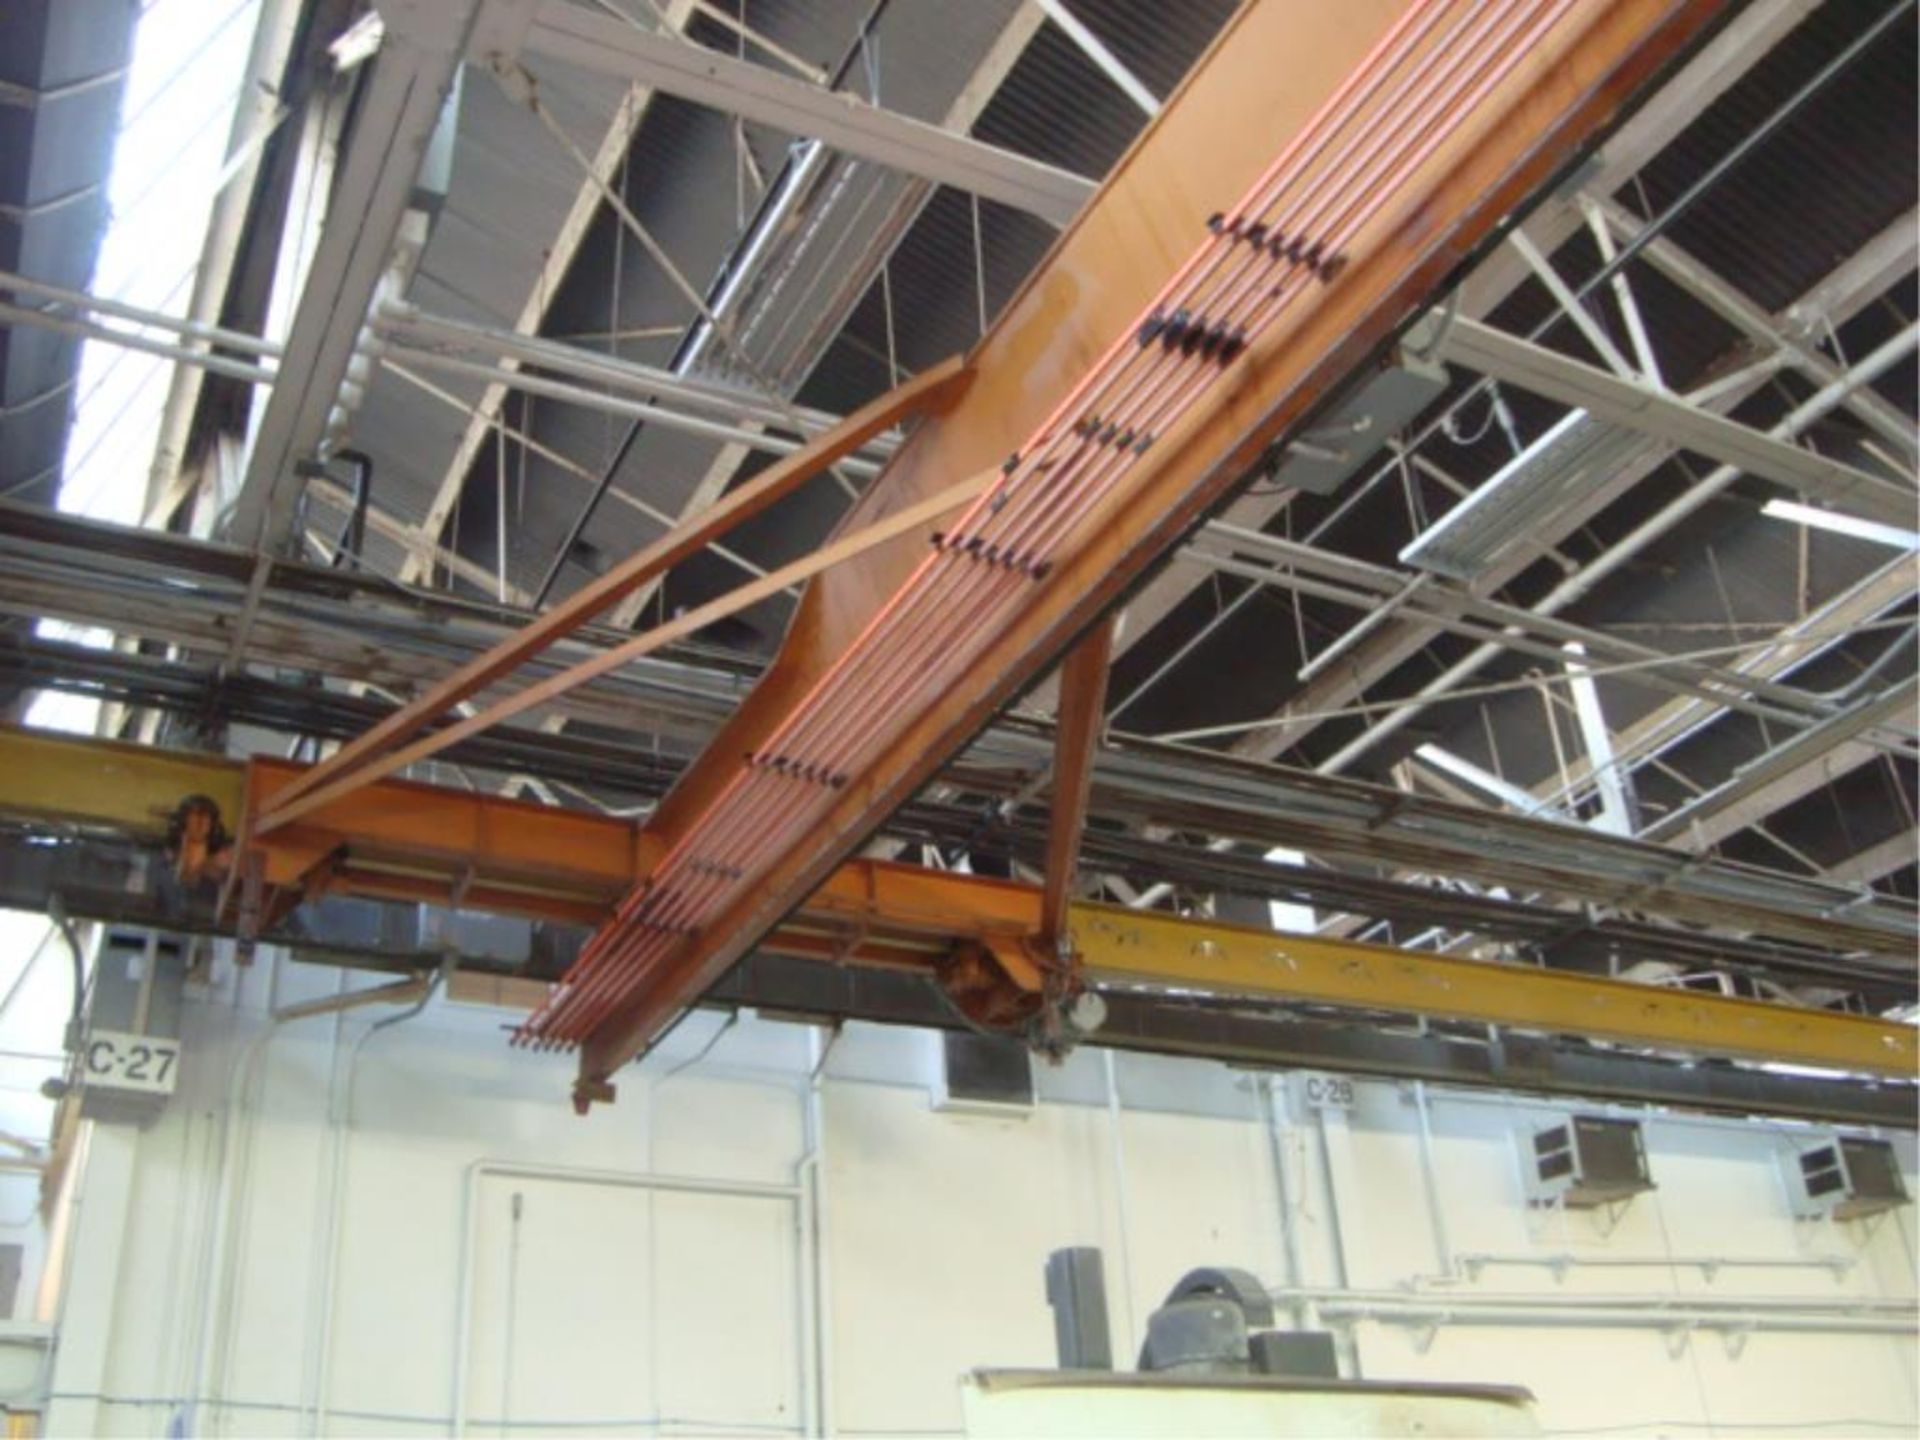 5-Ton Capacity Overhead Bridge Crane - Image 5 of 11